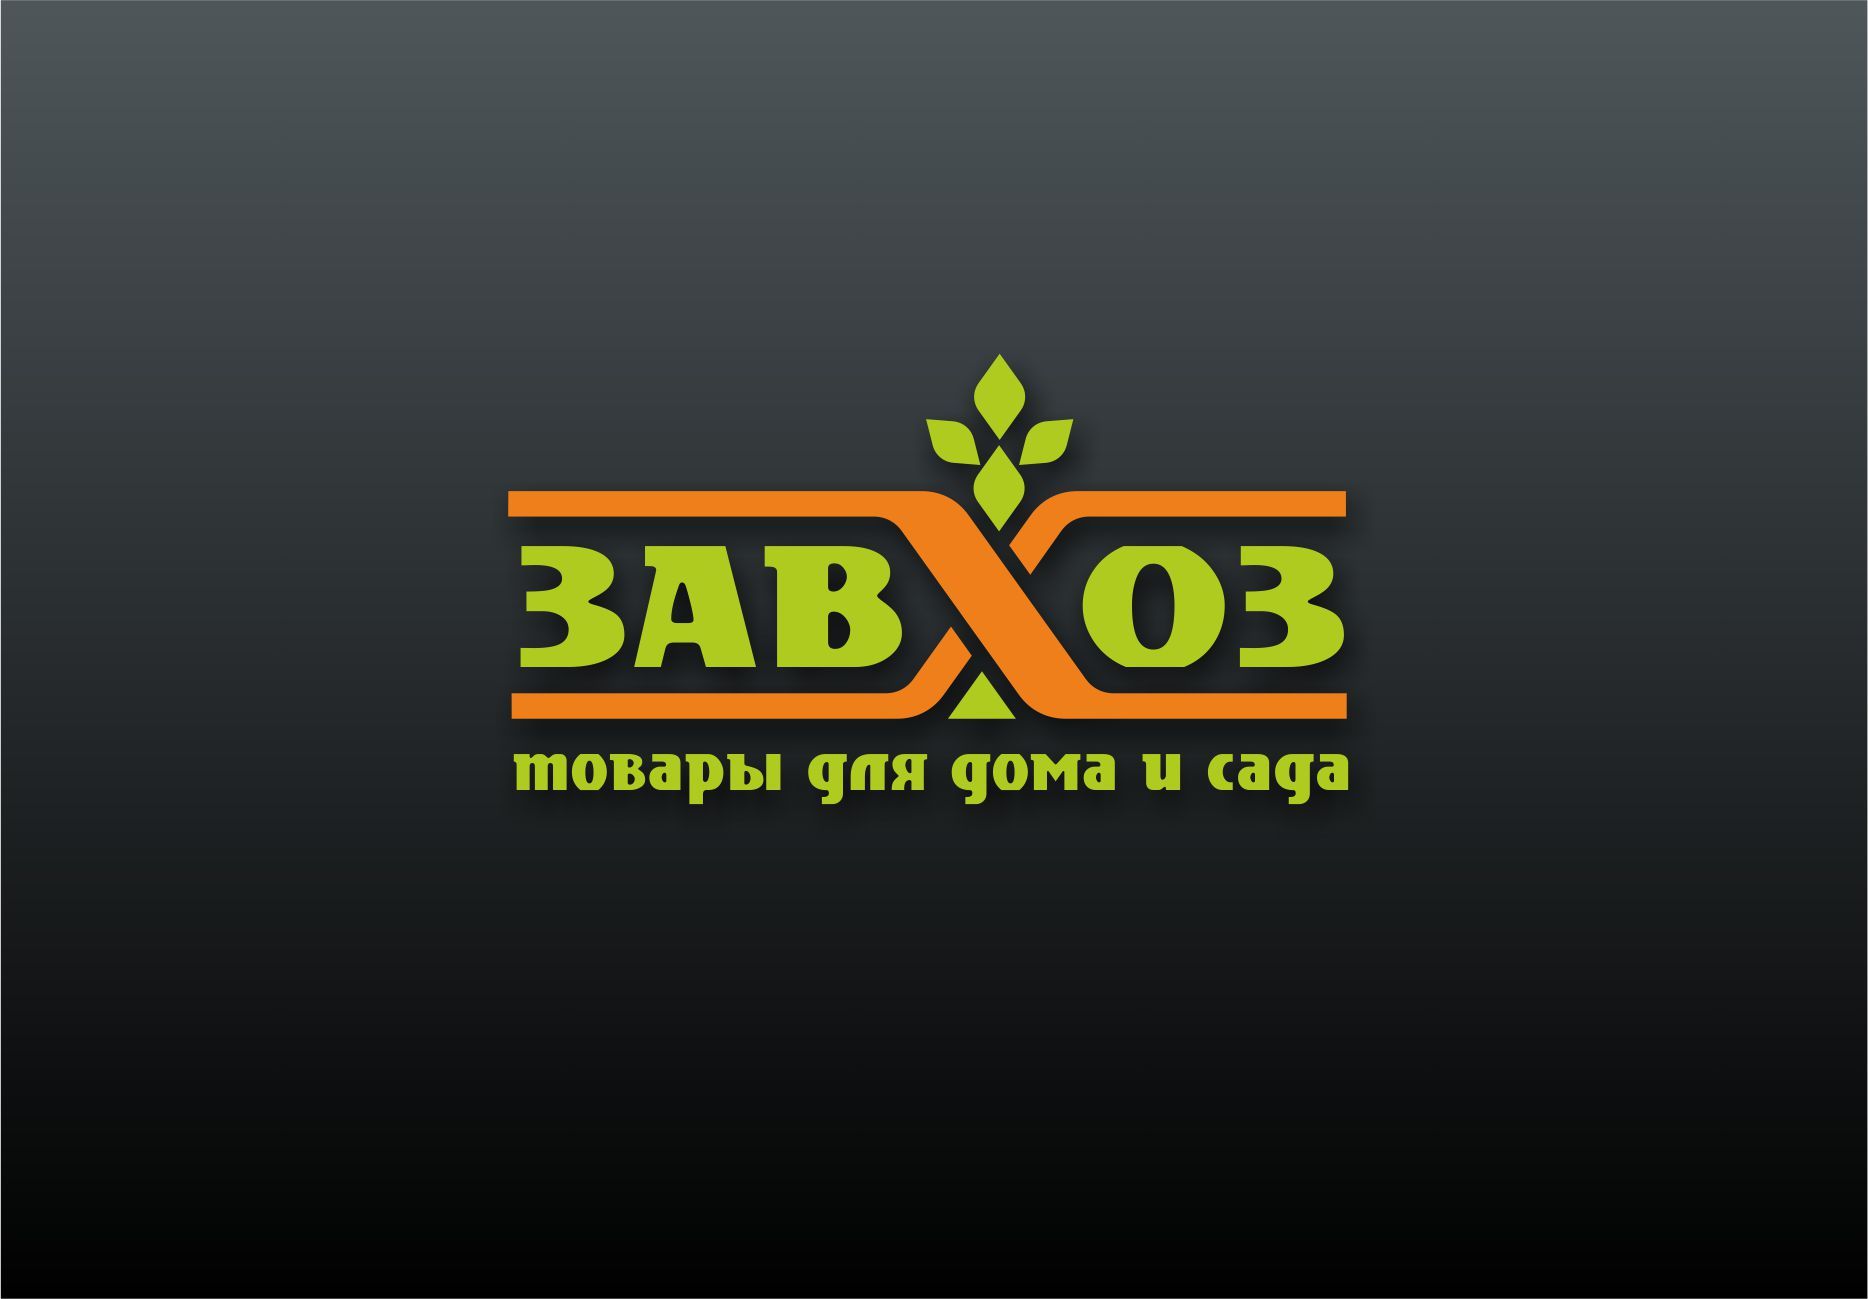 Лого и фирменный стиль для сети магазинов ЗАВХОЗ - дизайнер PAPANIN